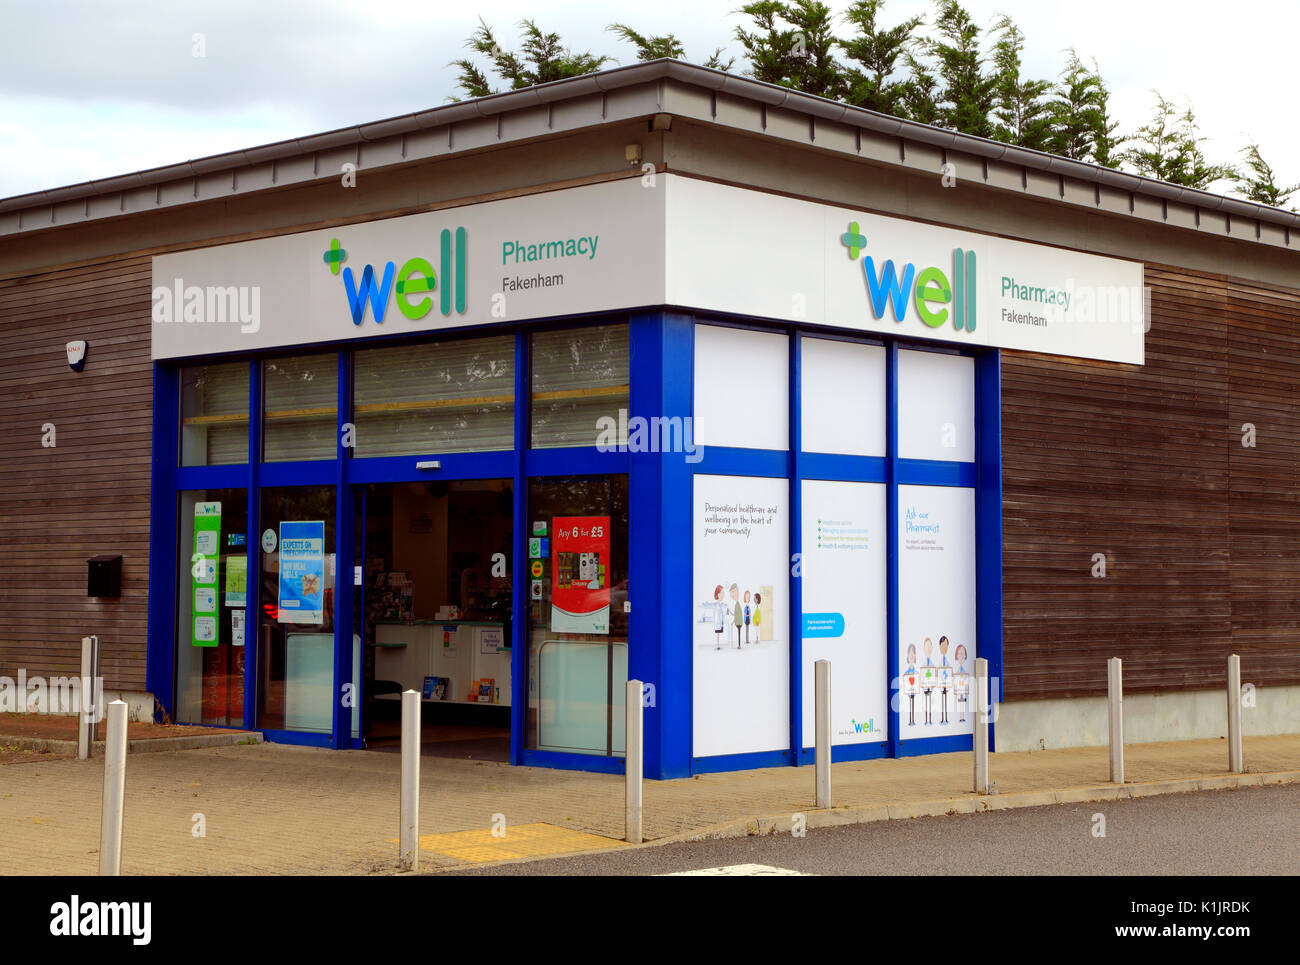 Well Pharmacy, Fakenham, Norfolk, England, UK, Pharmacist store, shop, health, healthcare Stock Photo